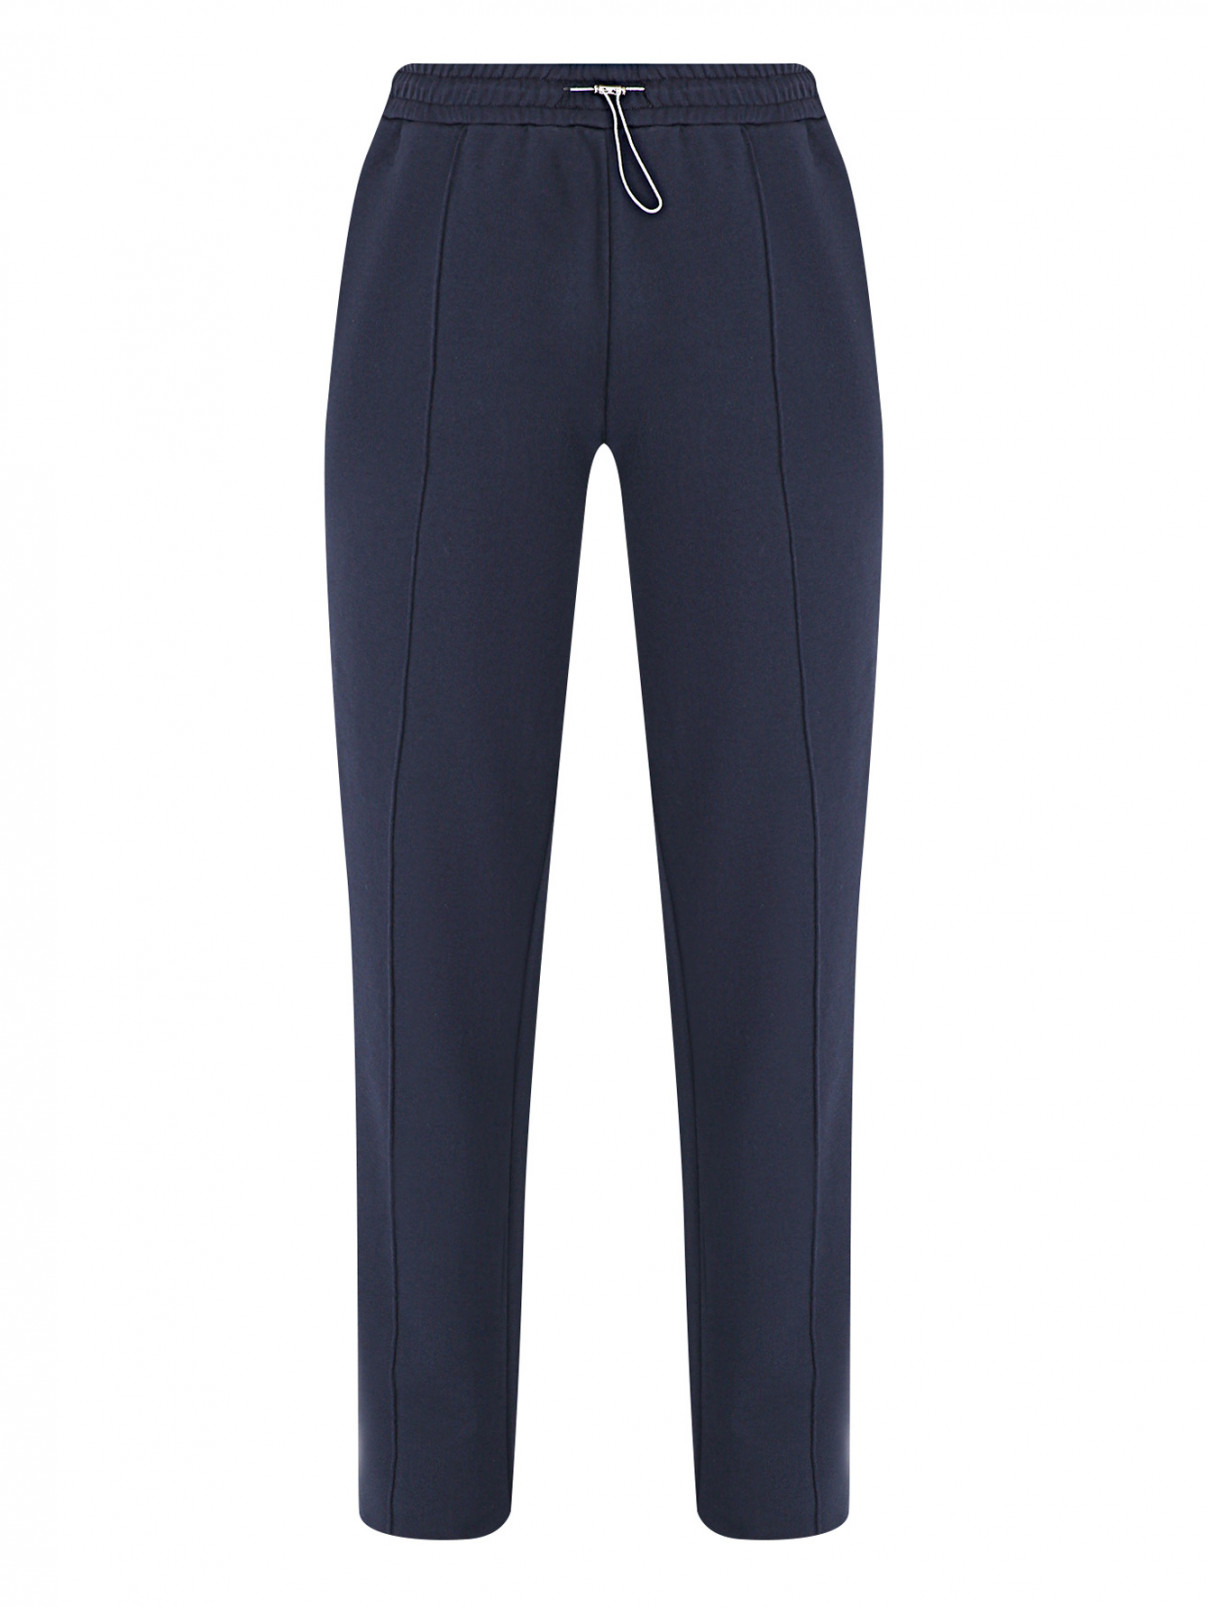 Трикотажные брюки на резинке Persona by Marina Rinaldi  –  Общий вид  – Цвет:  Синий